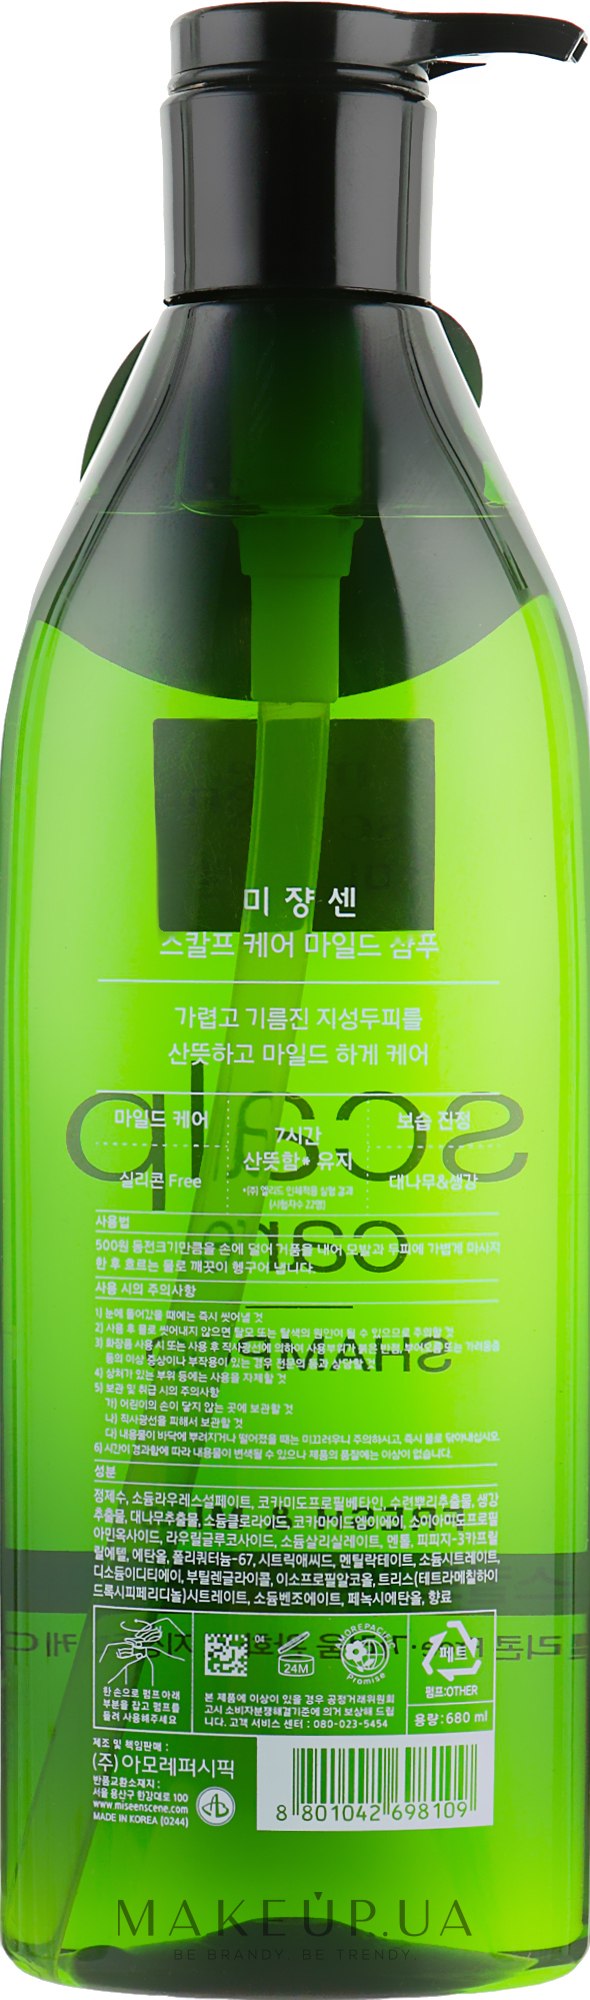 Шампунь для чувствительной кожи головы Mise-en-Scene Scalp Care Shampoo 42698109 - фото 2